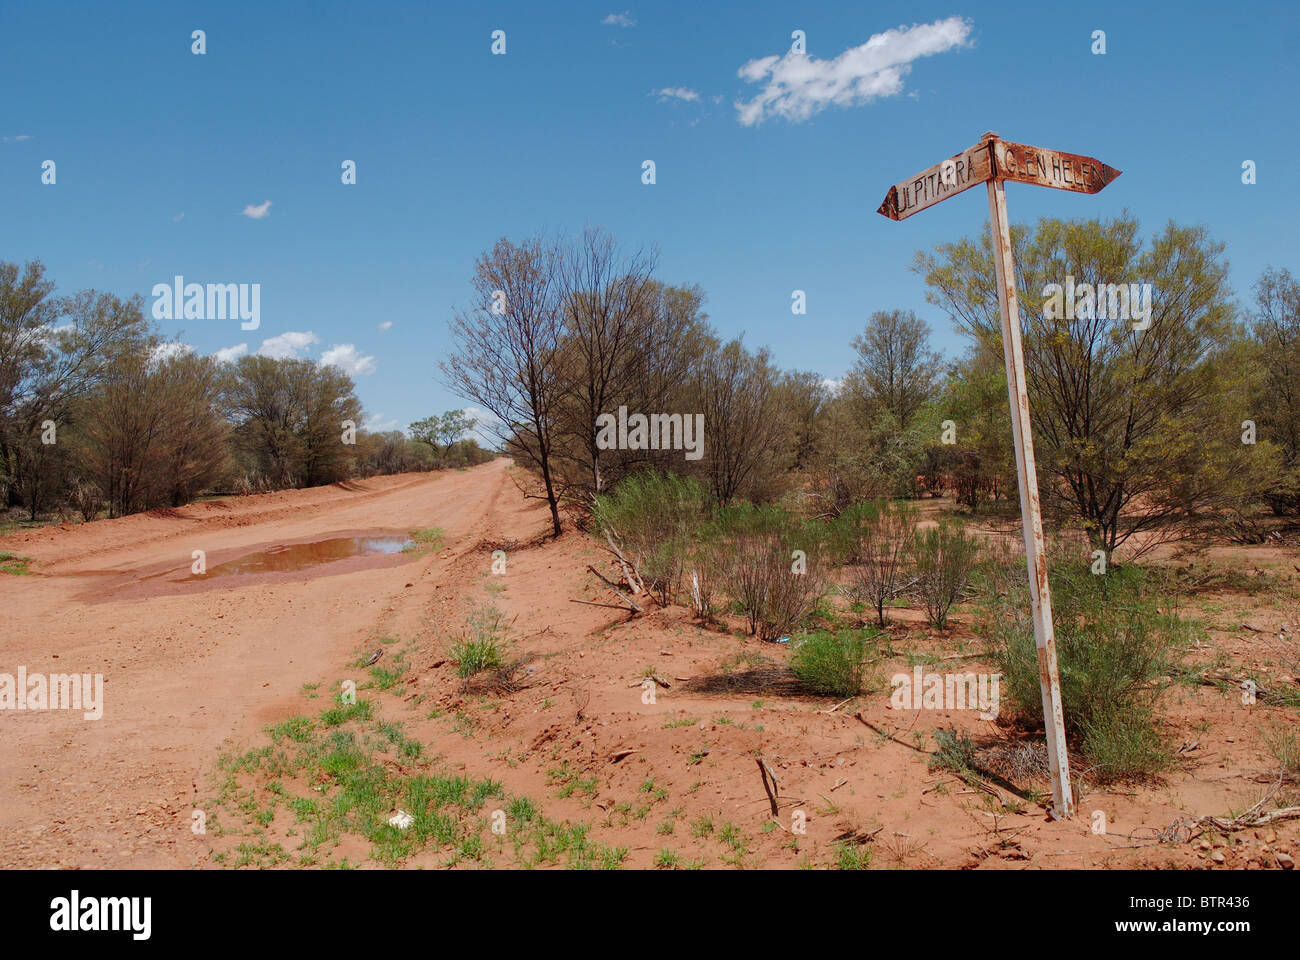 L'Australie, Territoire du Nord, vue de la route vide avec capacité d'inscription Banque D'Images